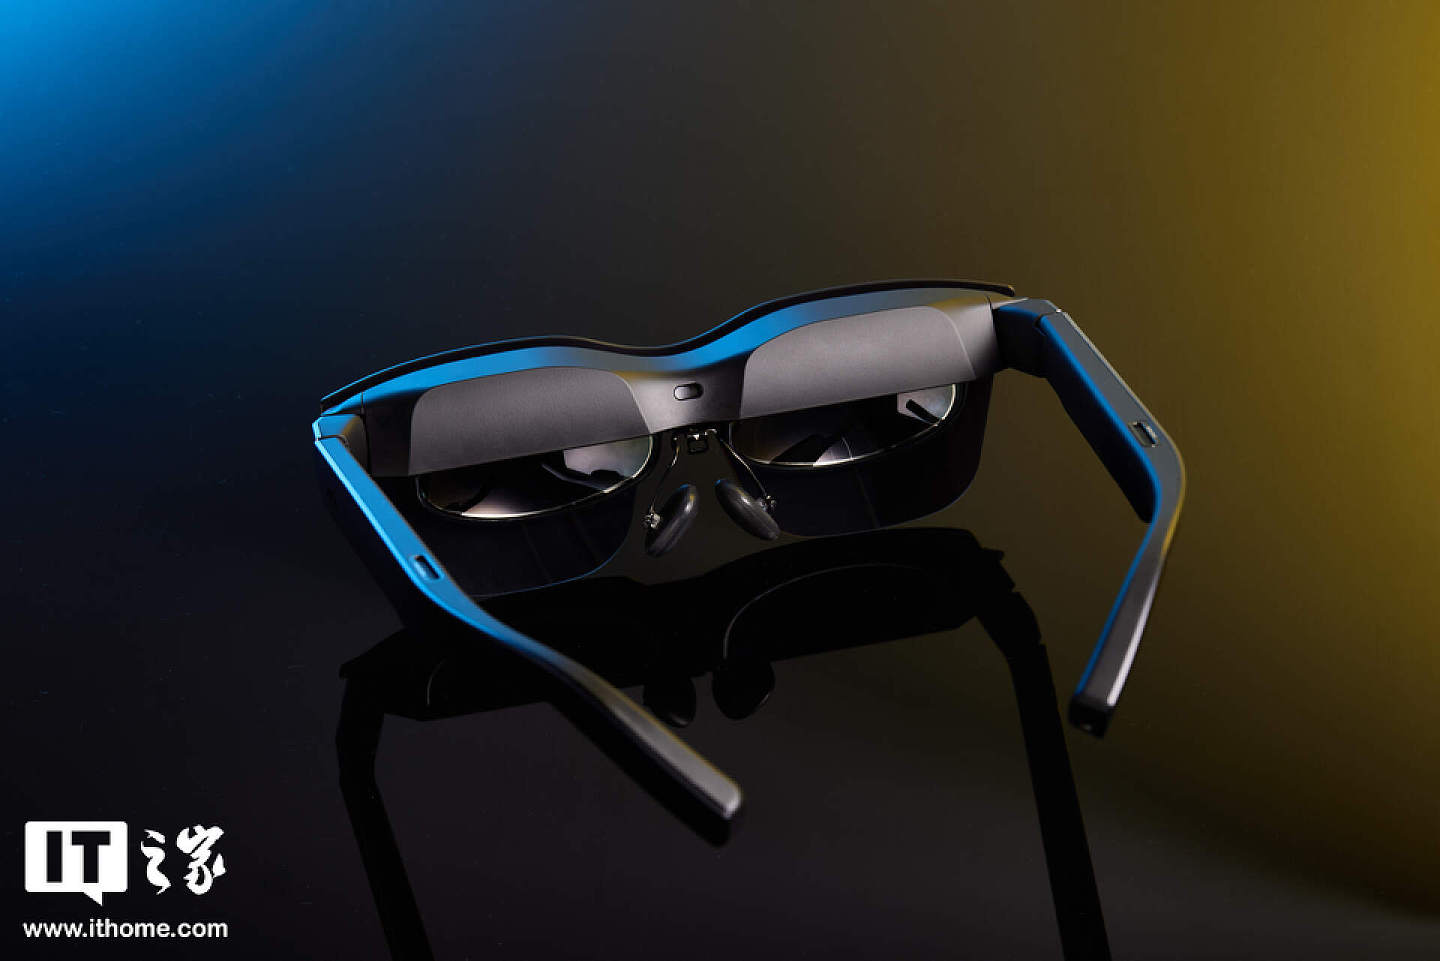 【IT之家开箱】201 英寸巨屏躺着看：雷鸟 Air 2s 智能眼镜图赏 - 4